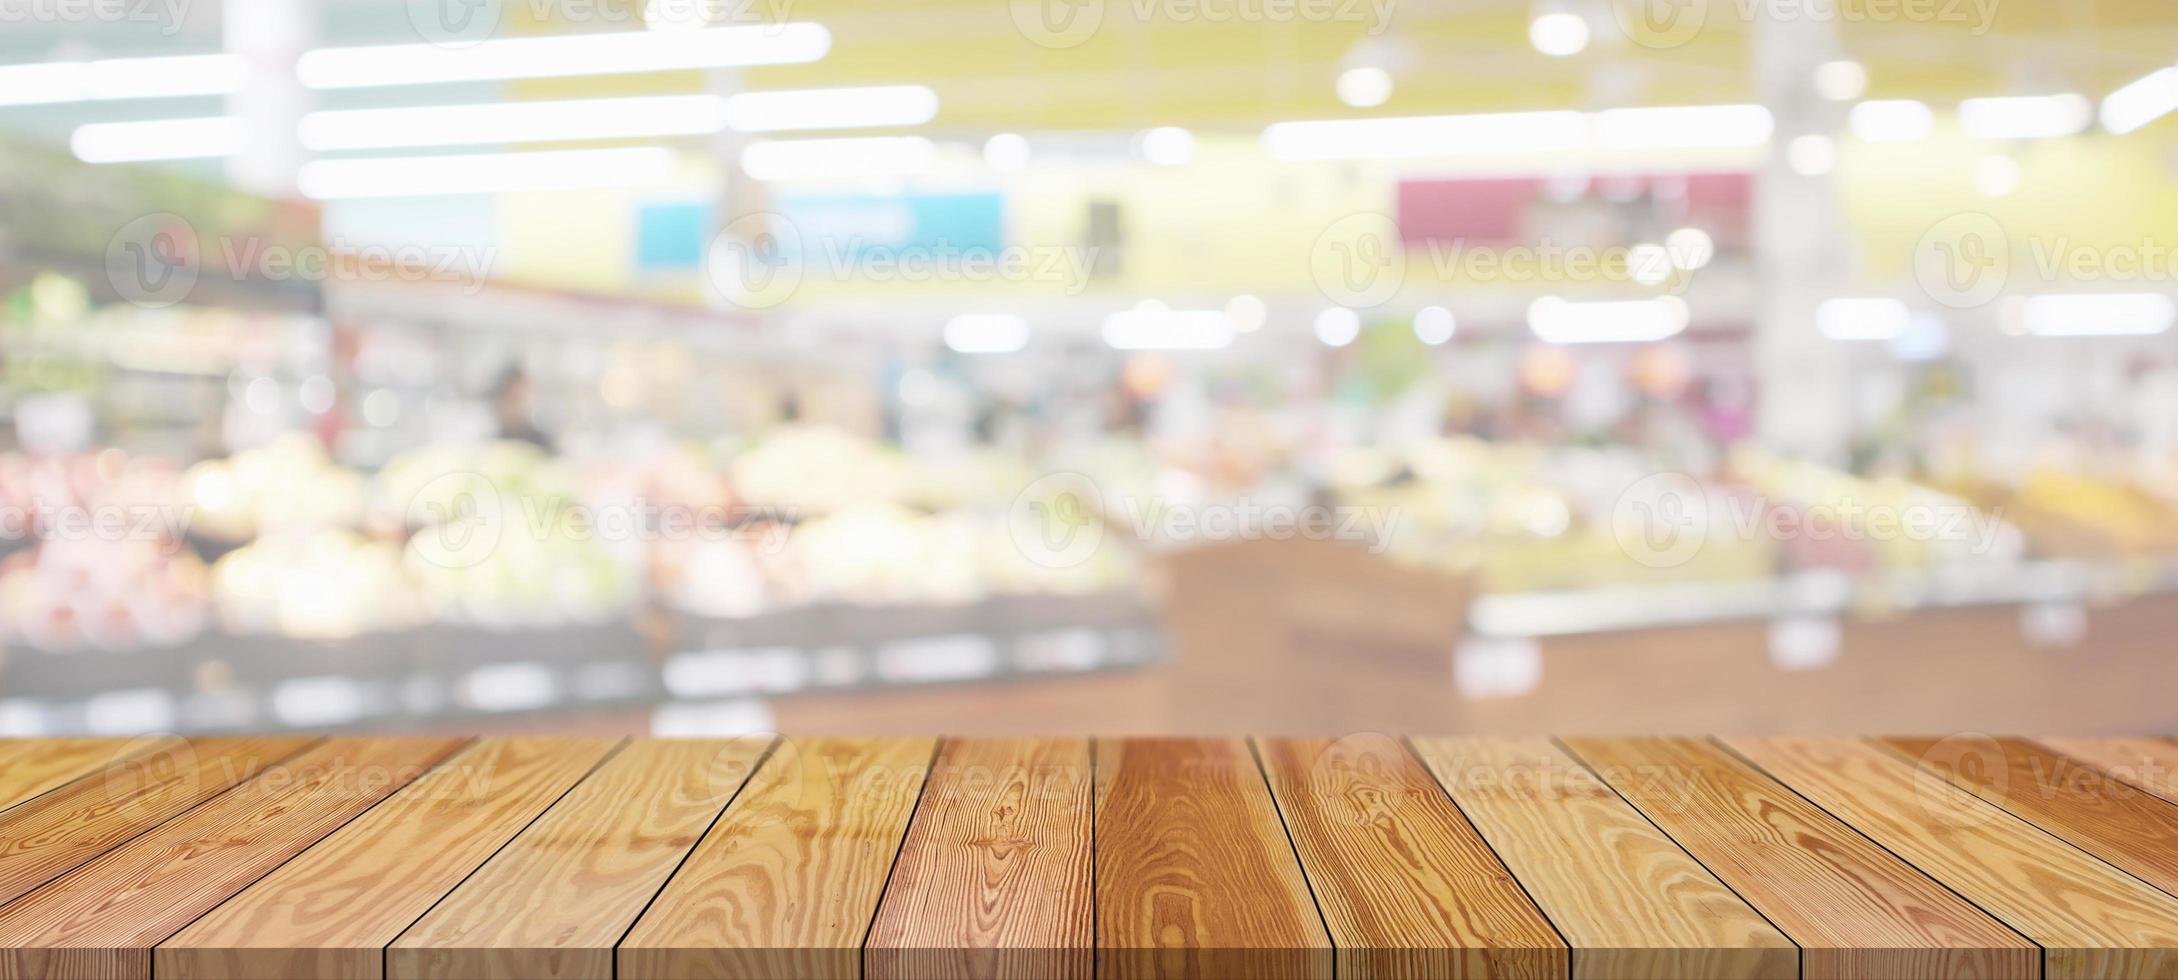 dessus de table en bois avec supermarché épicerie arrière-plan flou avec lumière bokeh pour l'affichage du produit photo